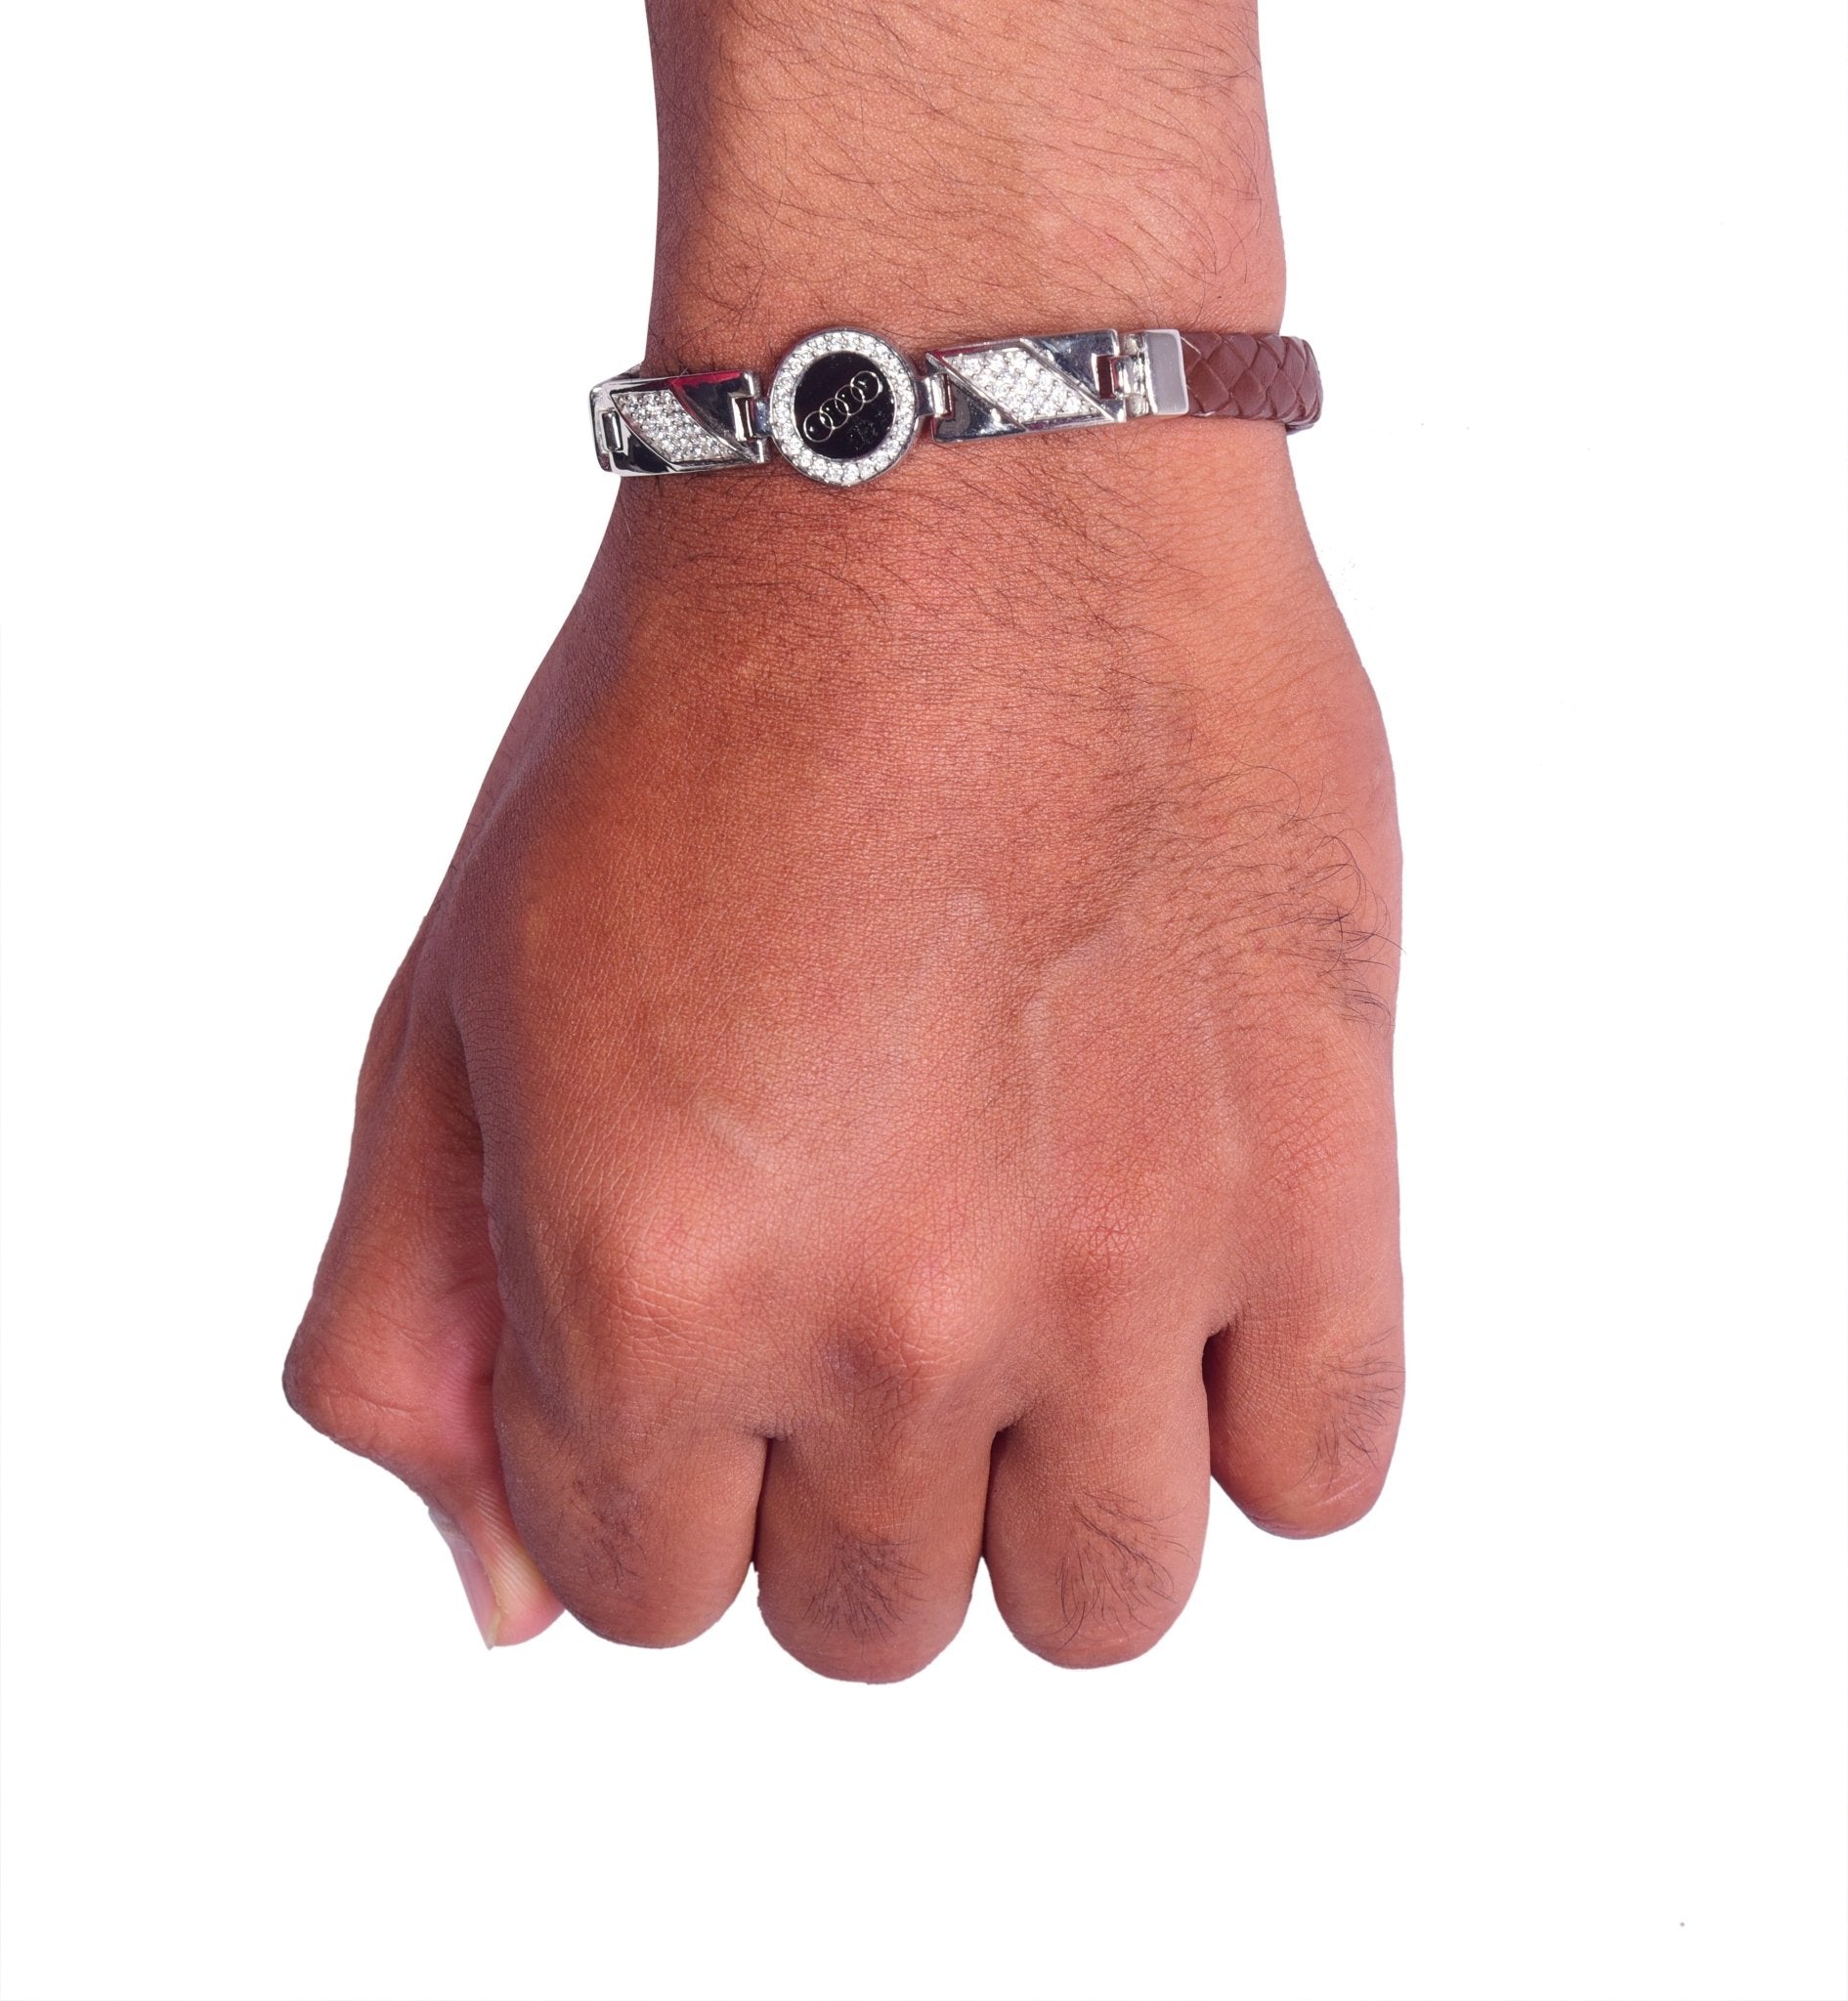 Audi Logo Leather Strap Silver Bracelet in 925 Sterling Silver | Men's Bracelets - Indique